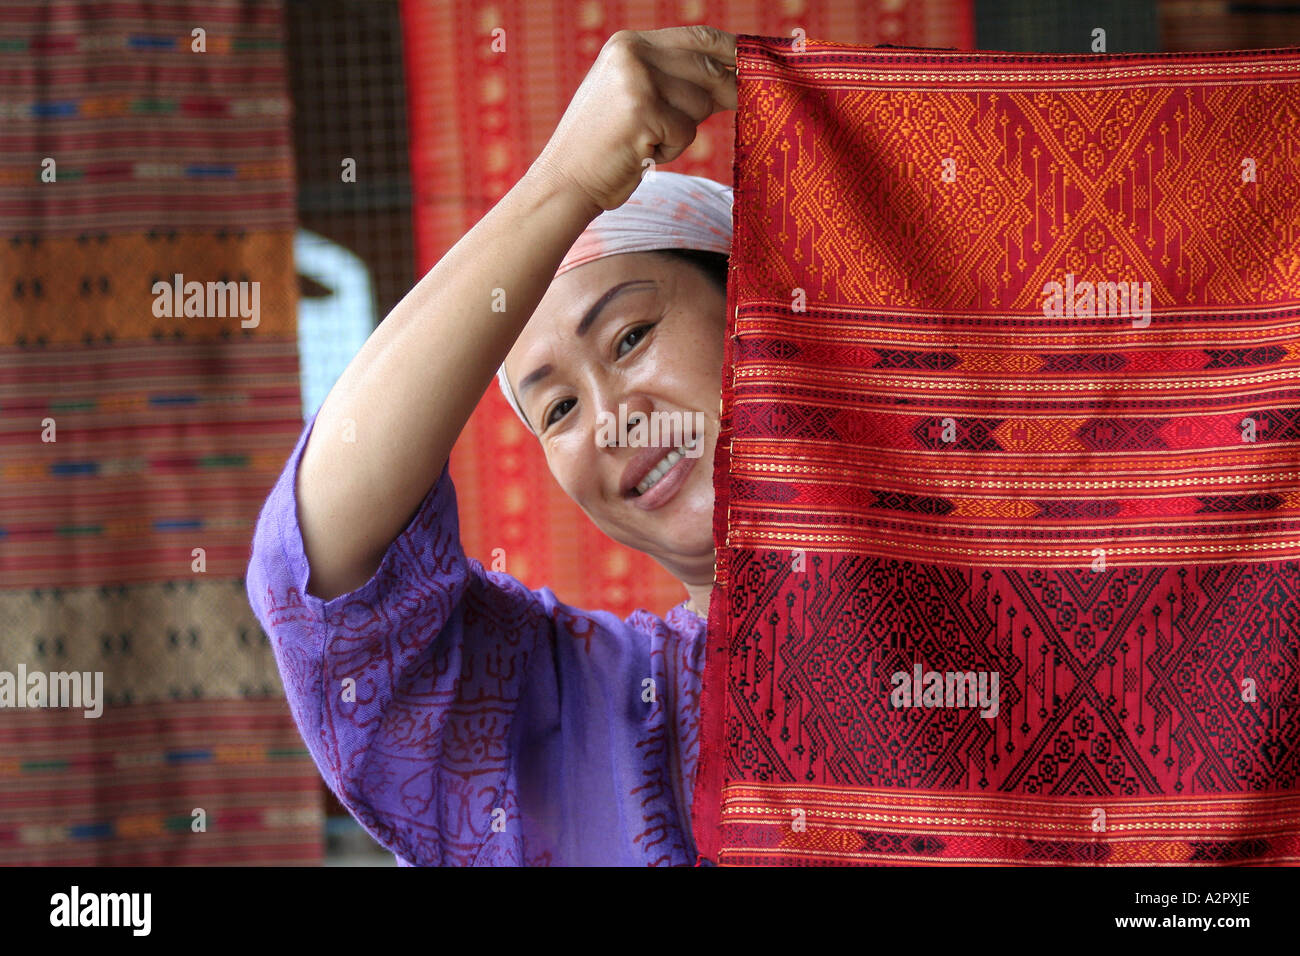 Affichage de la soie, Chiang Mai, Thaïlande Banque D'Images